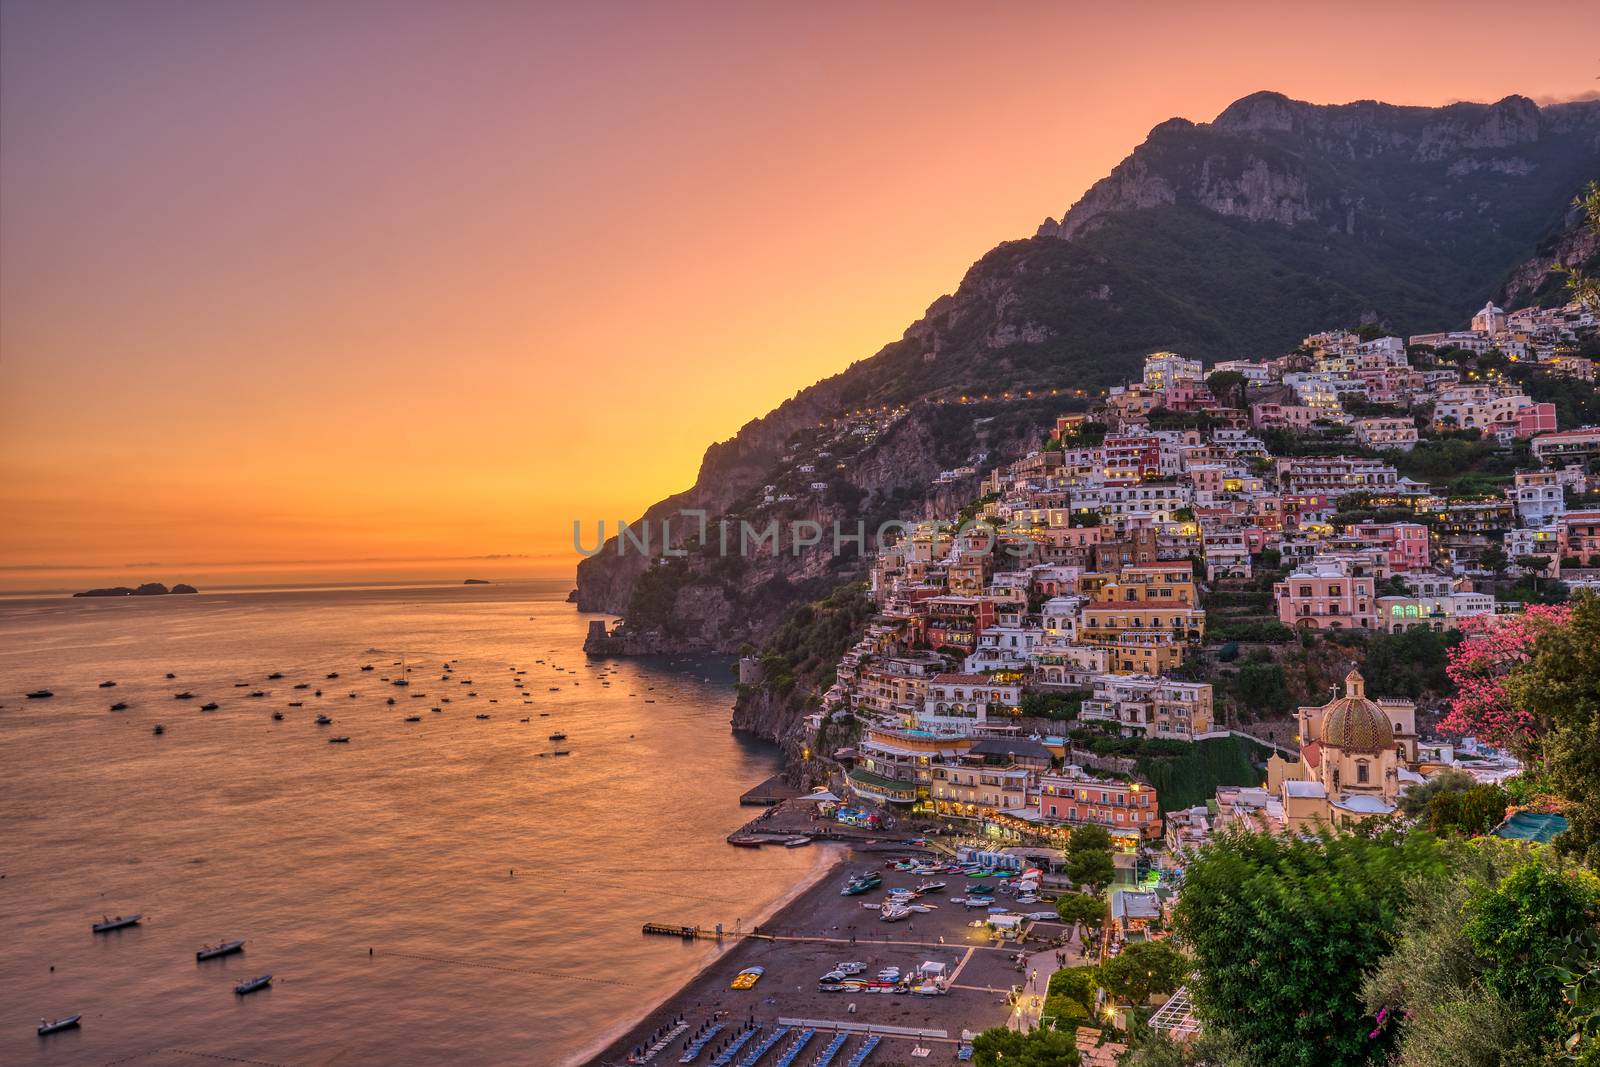 The famous village of Positano on the italian Amalfi coast after sunset